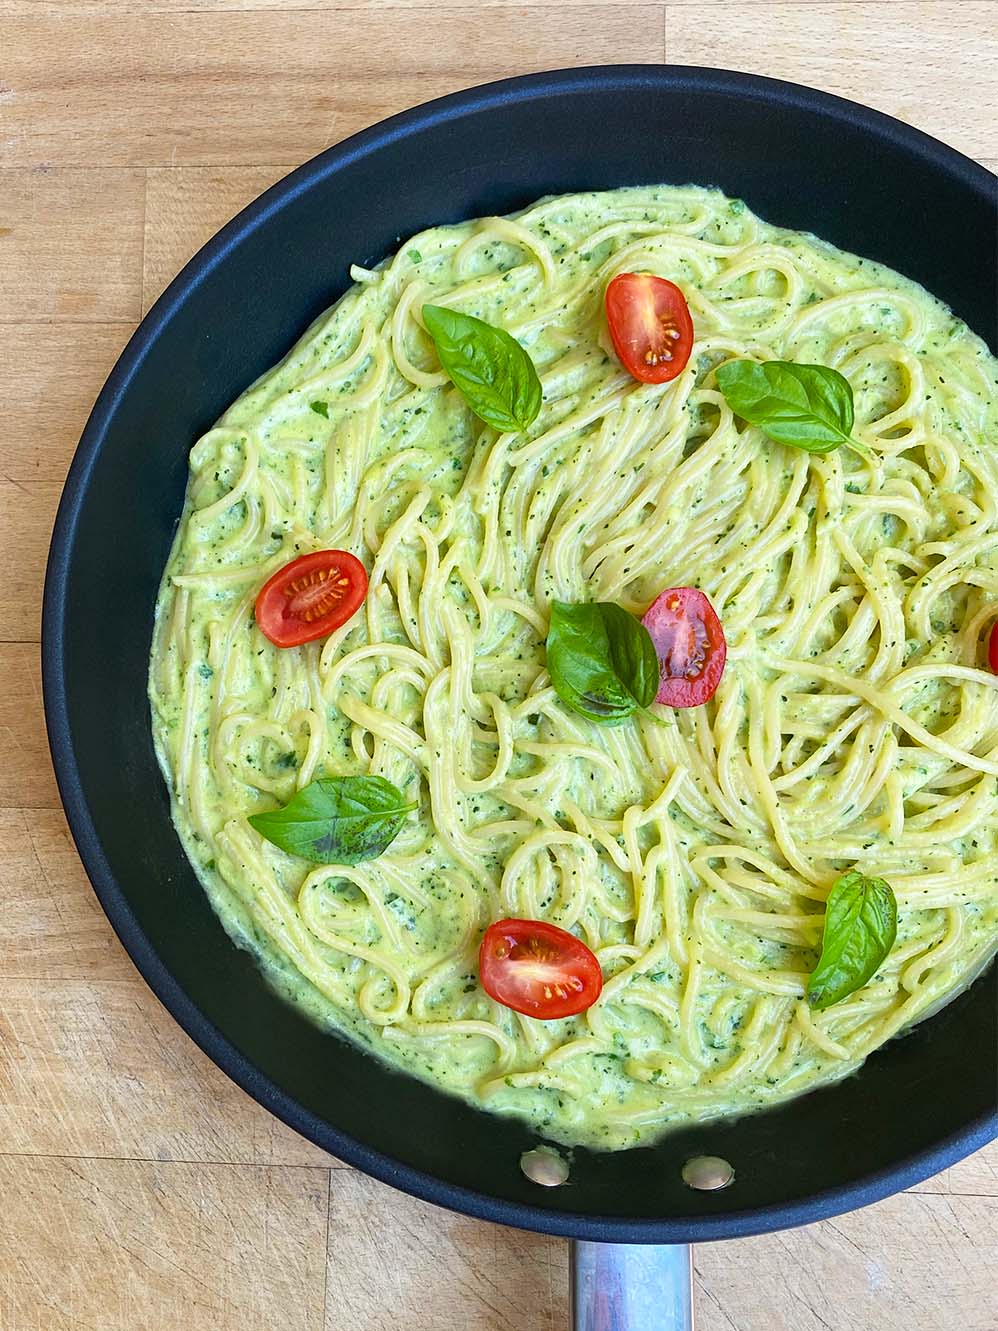 Spaghettis de légumes : recette facile (4 étapes - 20 min)